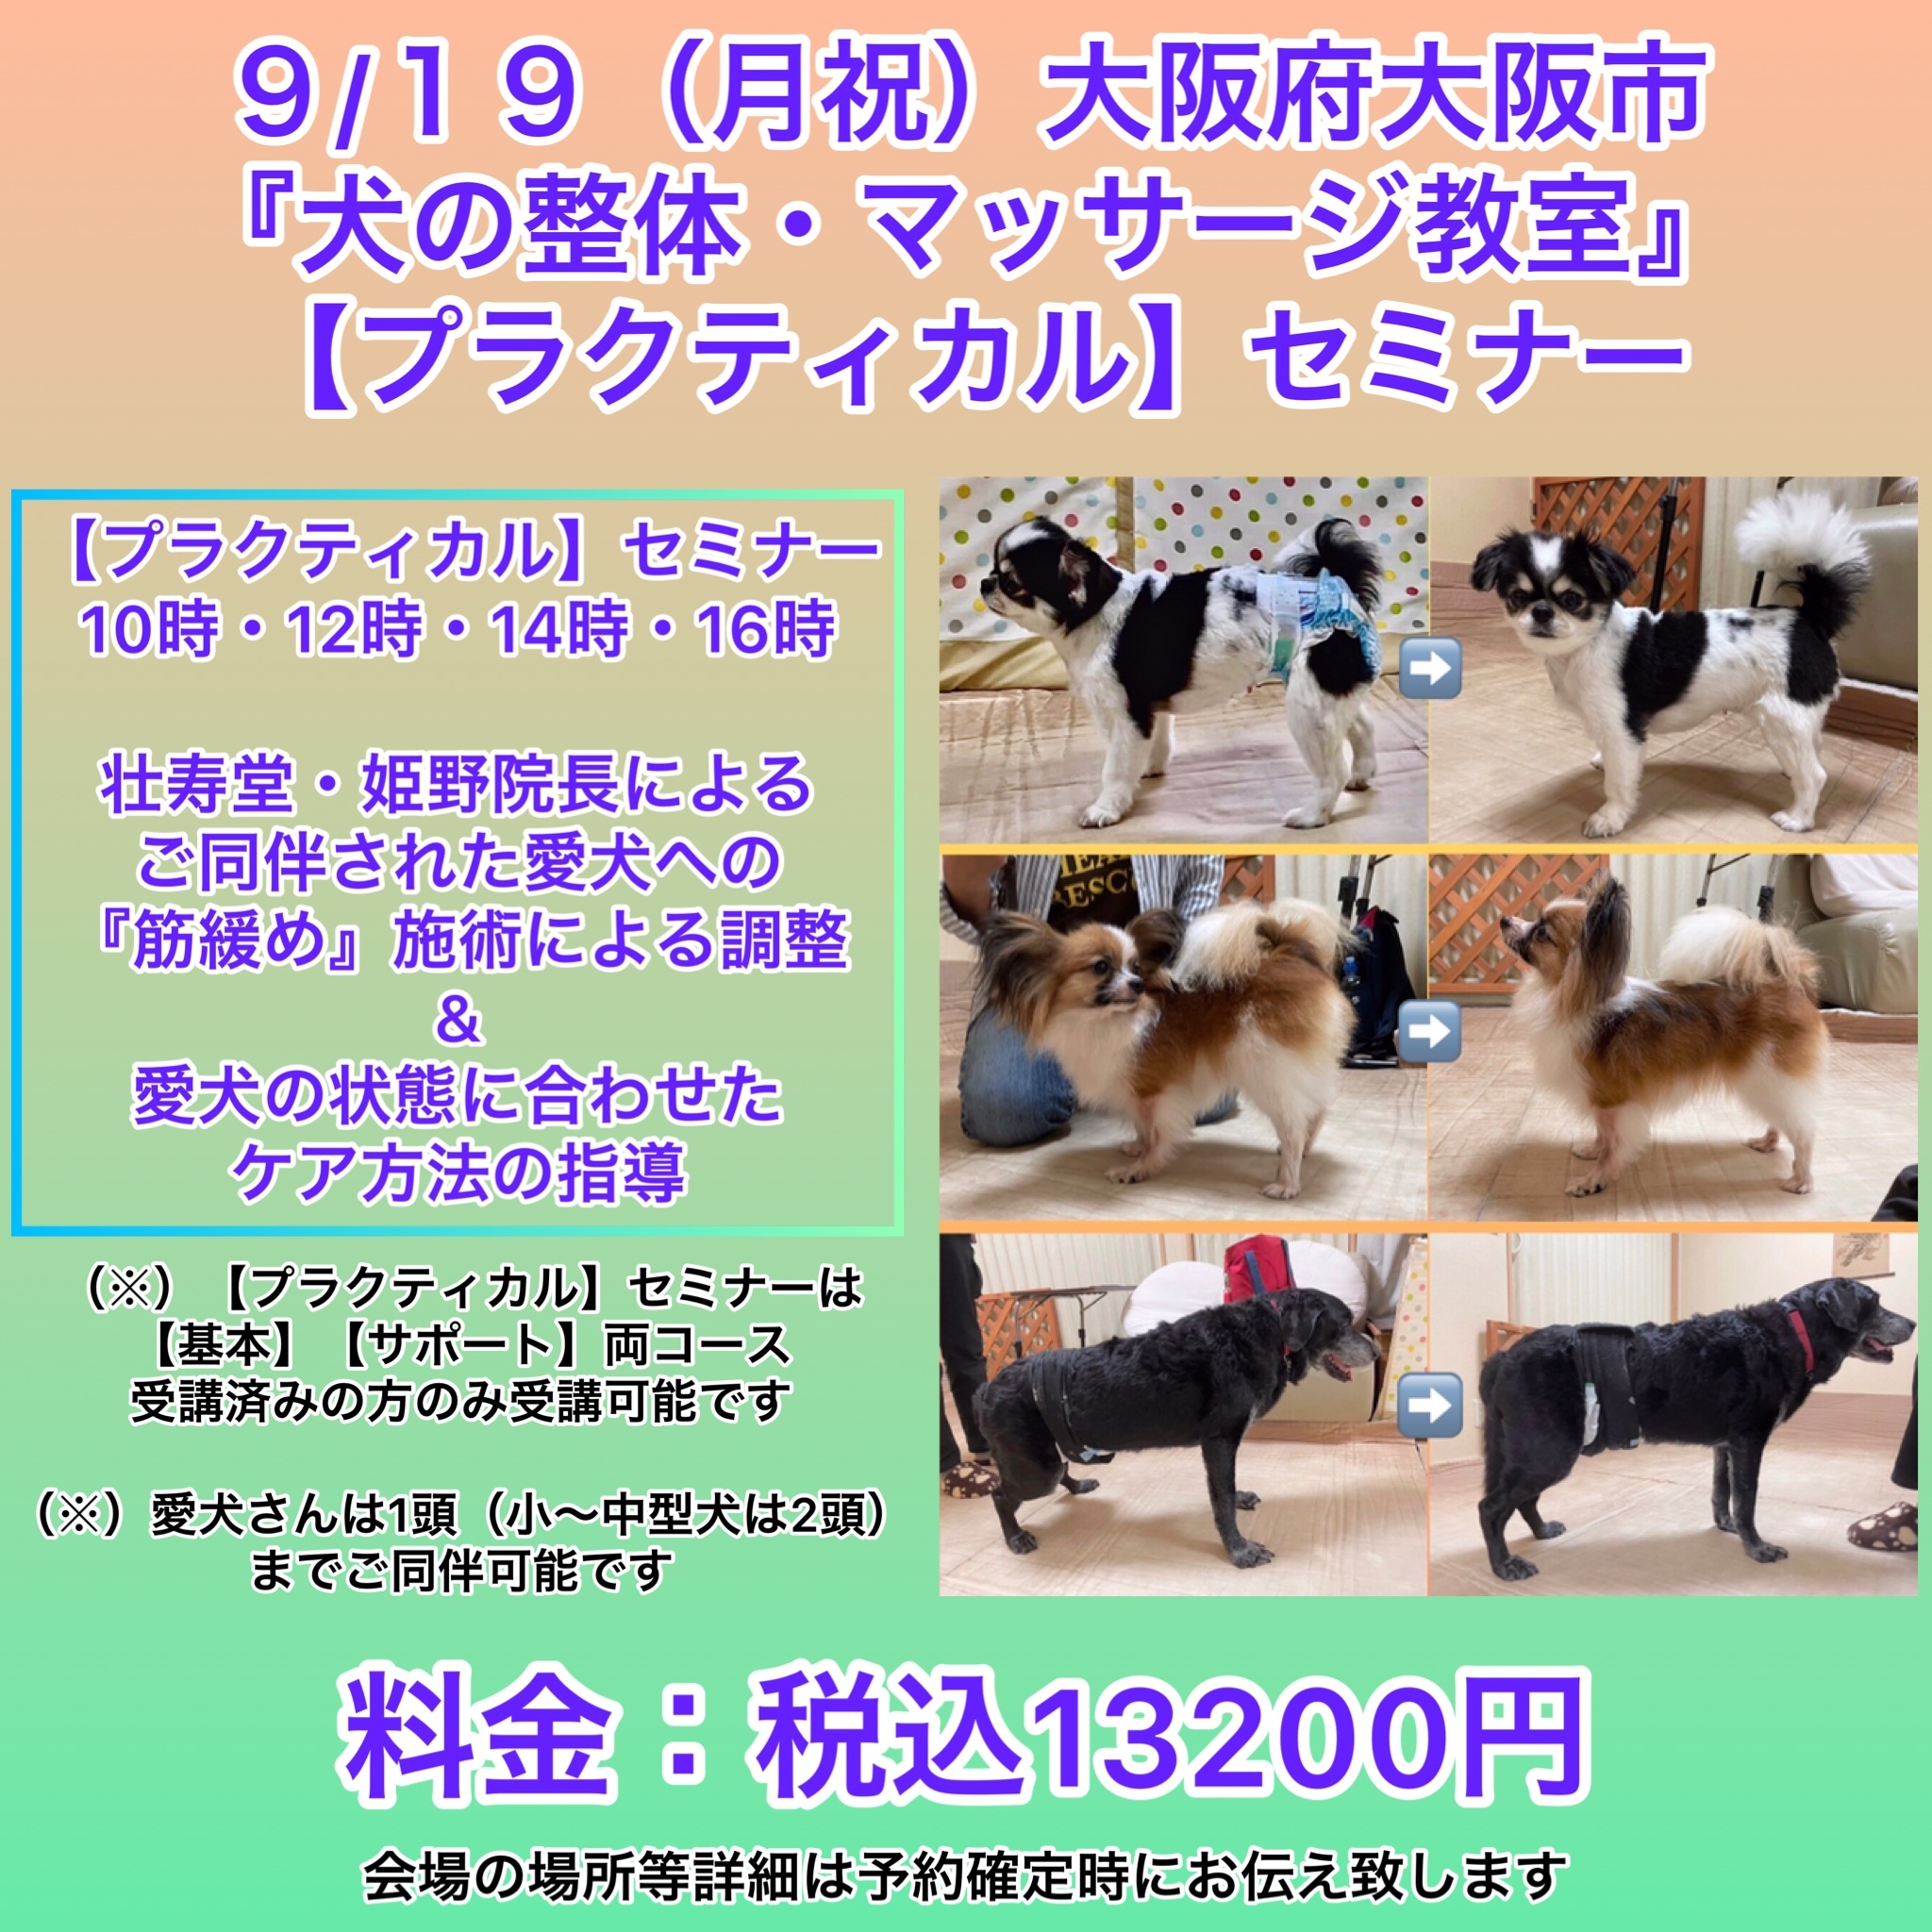 大阪府開催犬の整体マッサージセミナー告知